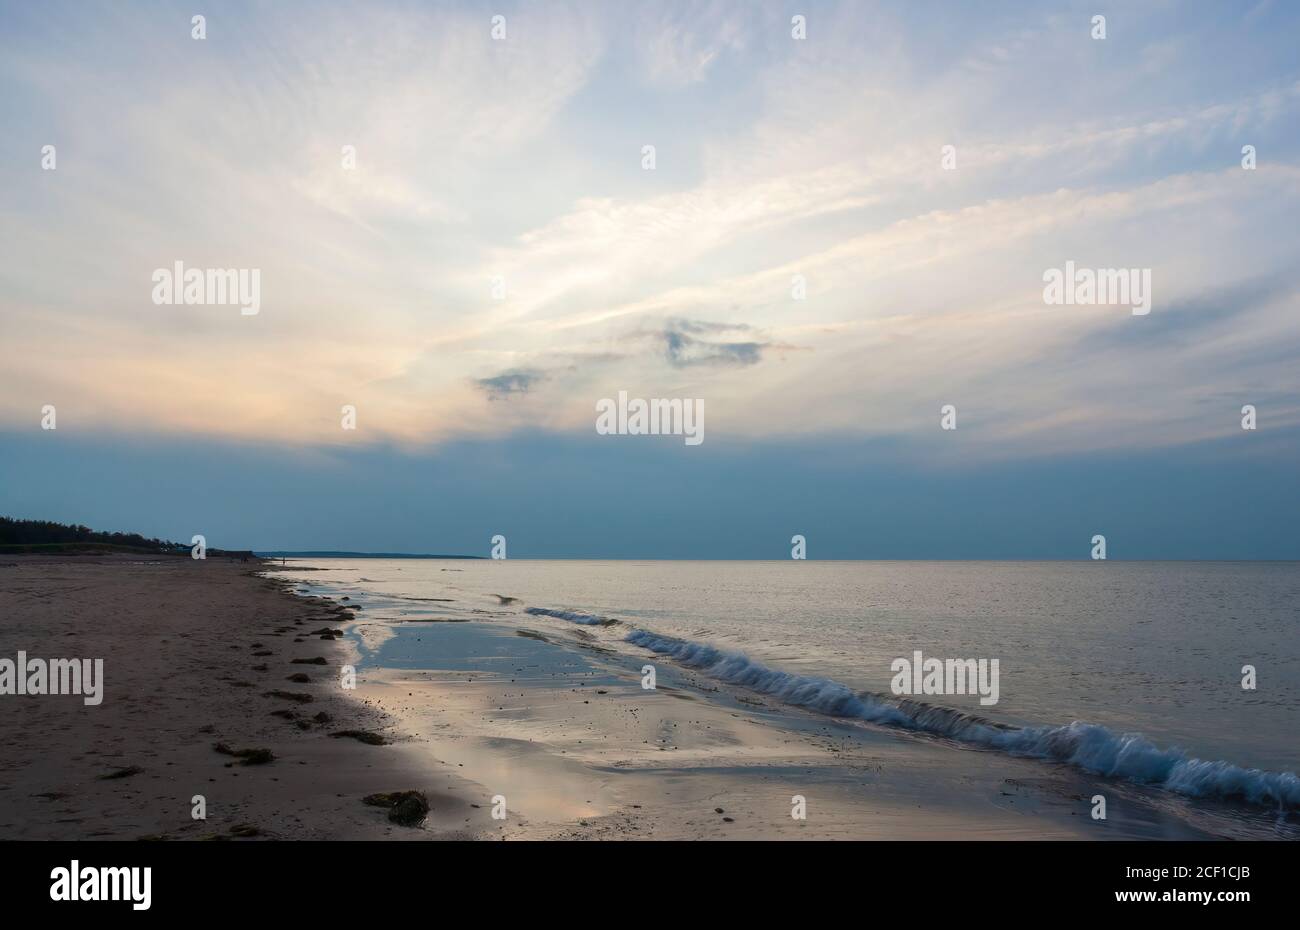 Plage déserte au crépuscule. Ciel nuageux dans des tons bleus reflétés sur les eaux calmes de l'océan. Cavendish Beach, parc national de l'Île-du-Prince-Édouard, Canada Banque D'Images